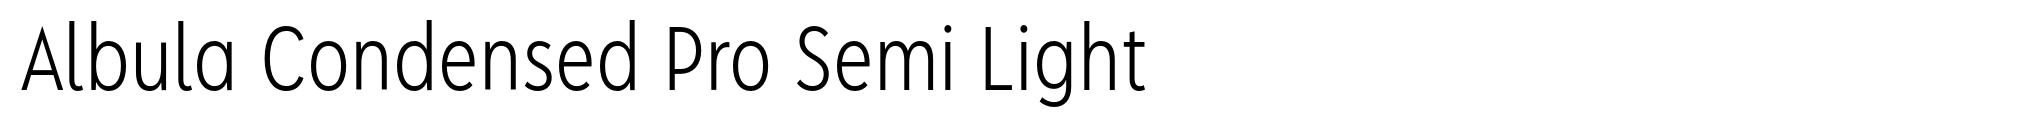 Albula Condensed Pro Semi Light image